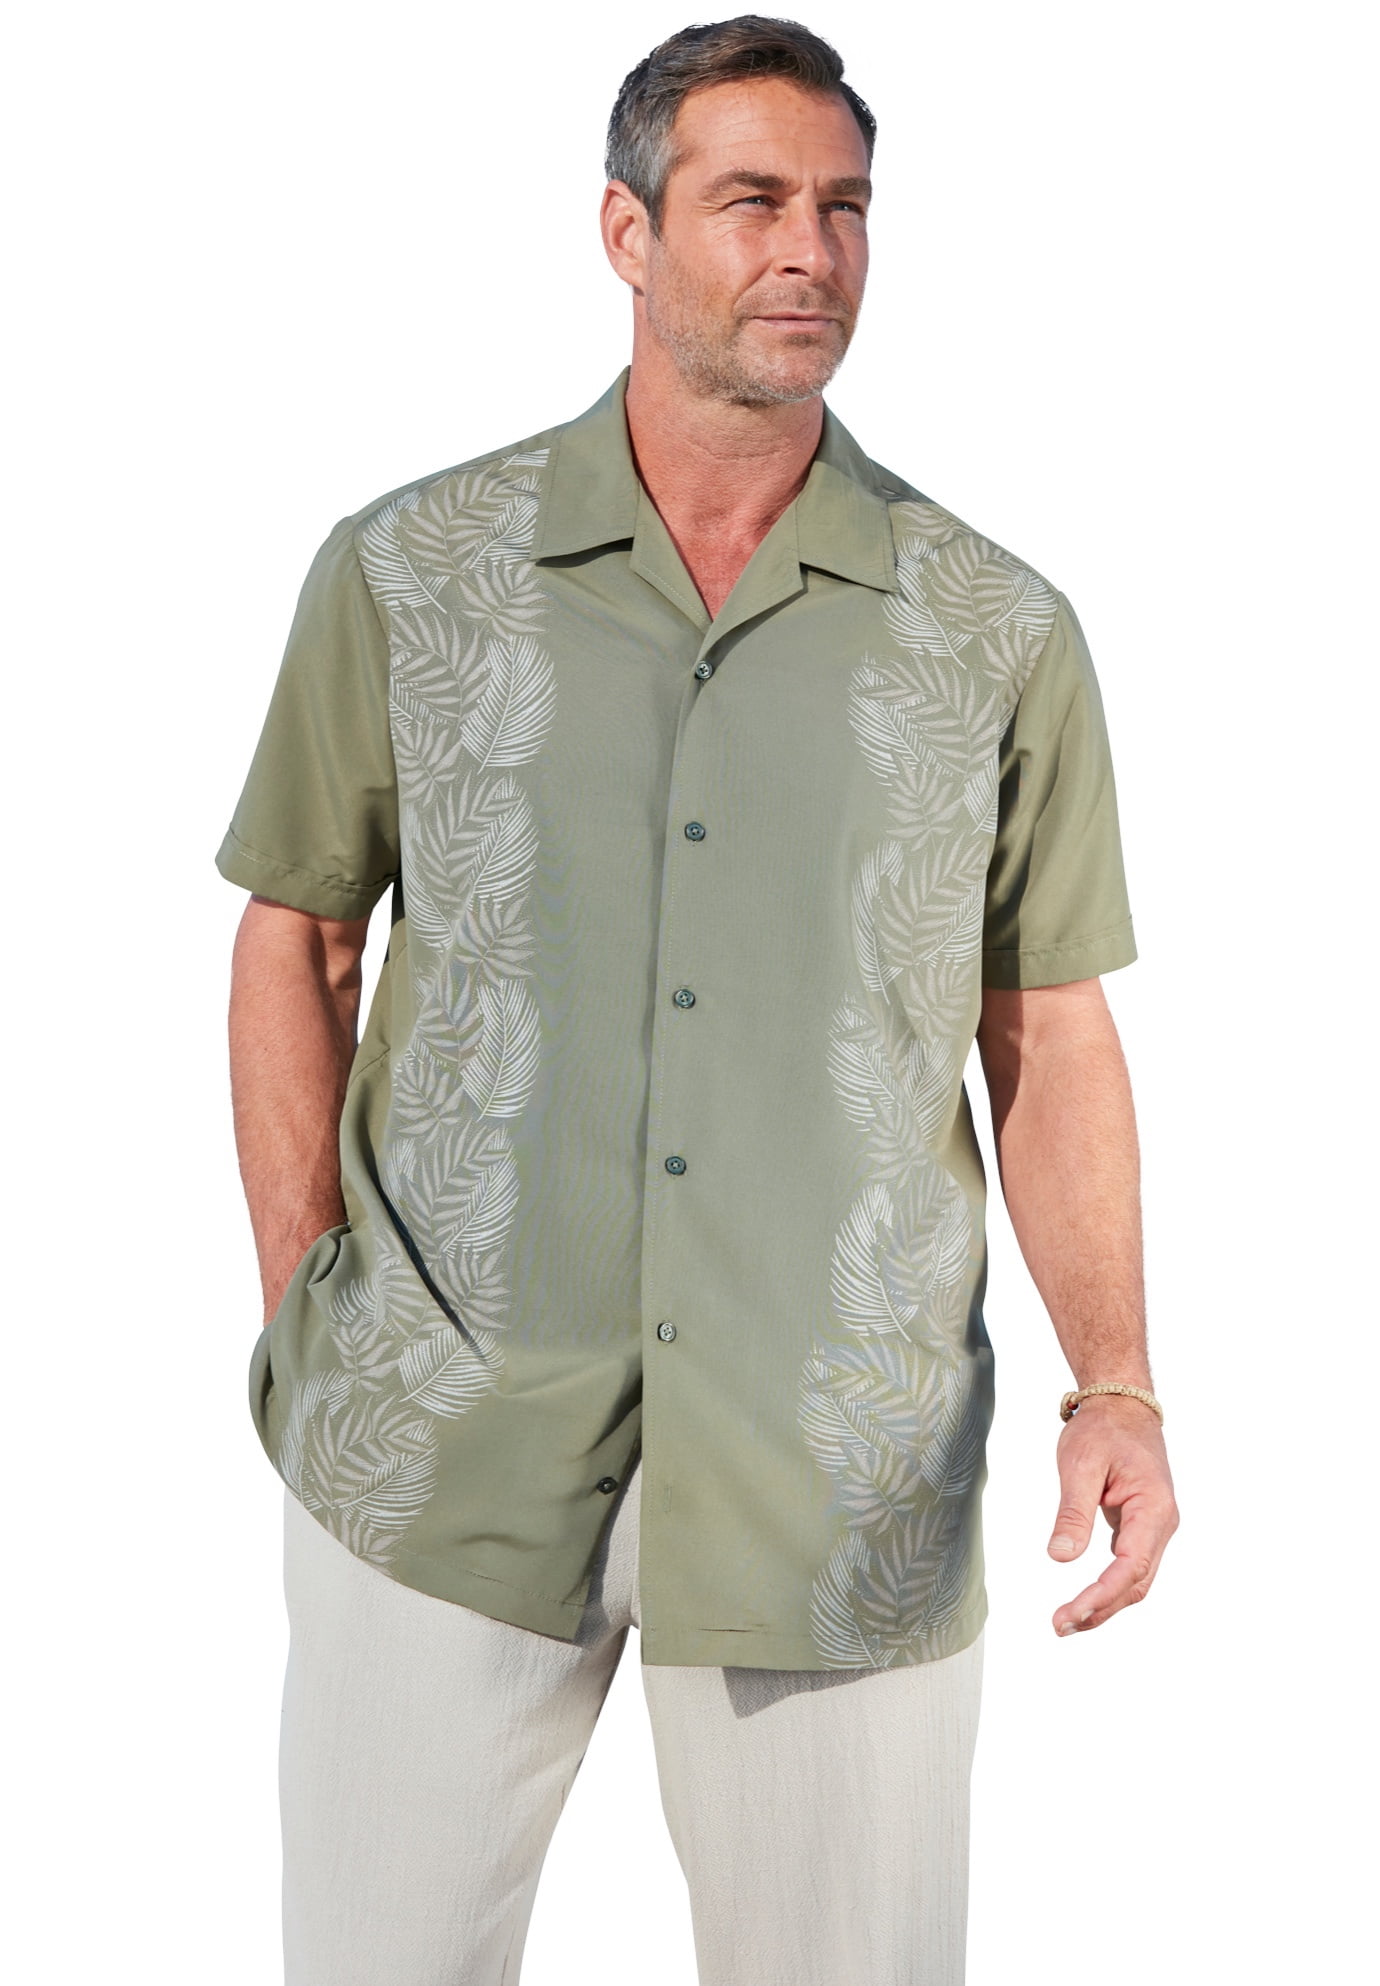 Kingsize Men's Big & Tall Short Sleeve Island Shirt - Walmart.com